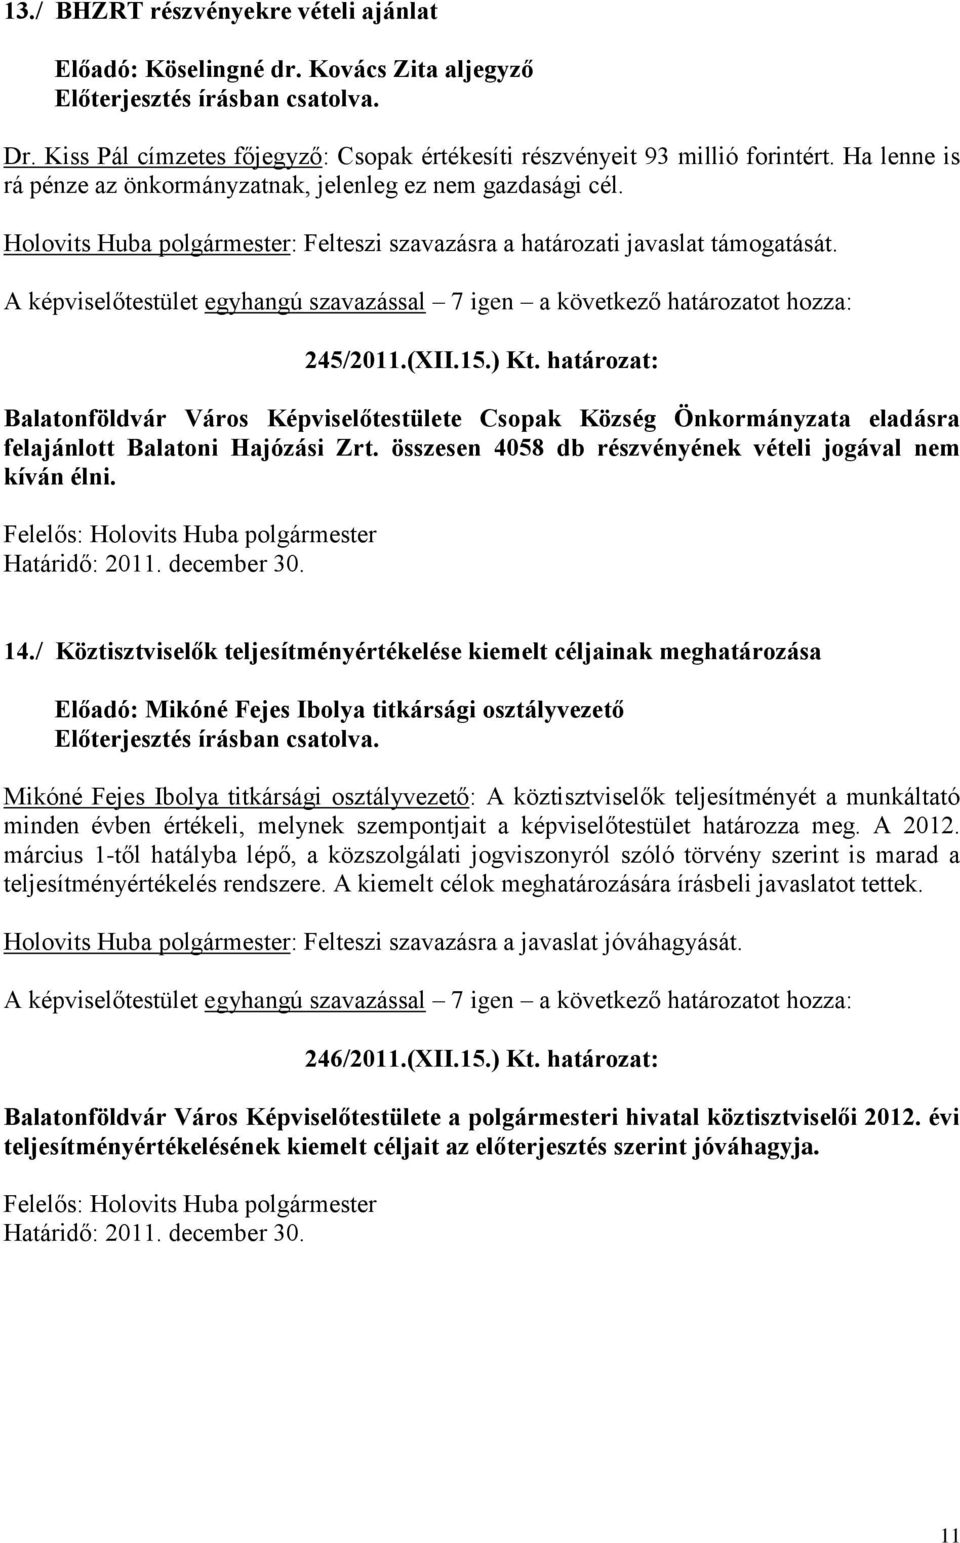 határozat: Balatonföldvár Város Képviselőtestülete Csopak Község Önkormányzata eladásra felajánlott Balatoni Hajózási Zrt. összesen 4058 db részvényének vételi jogával nem kíván élni. 14.